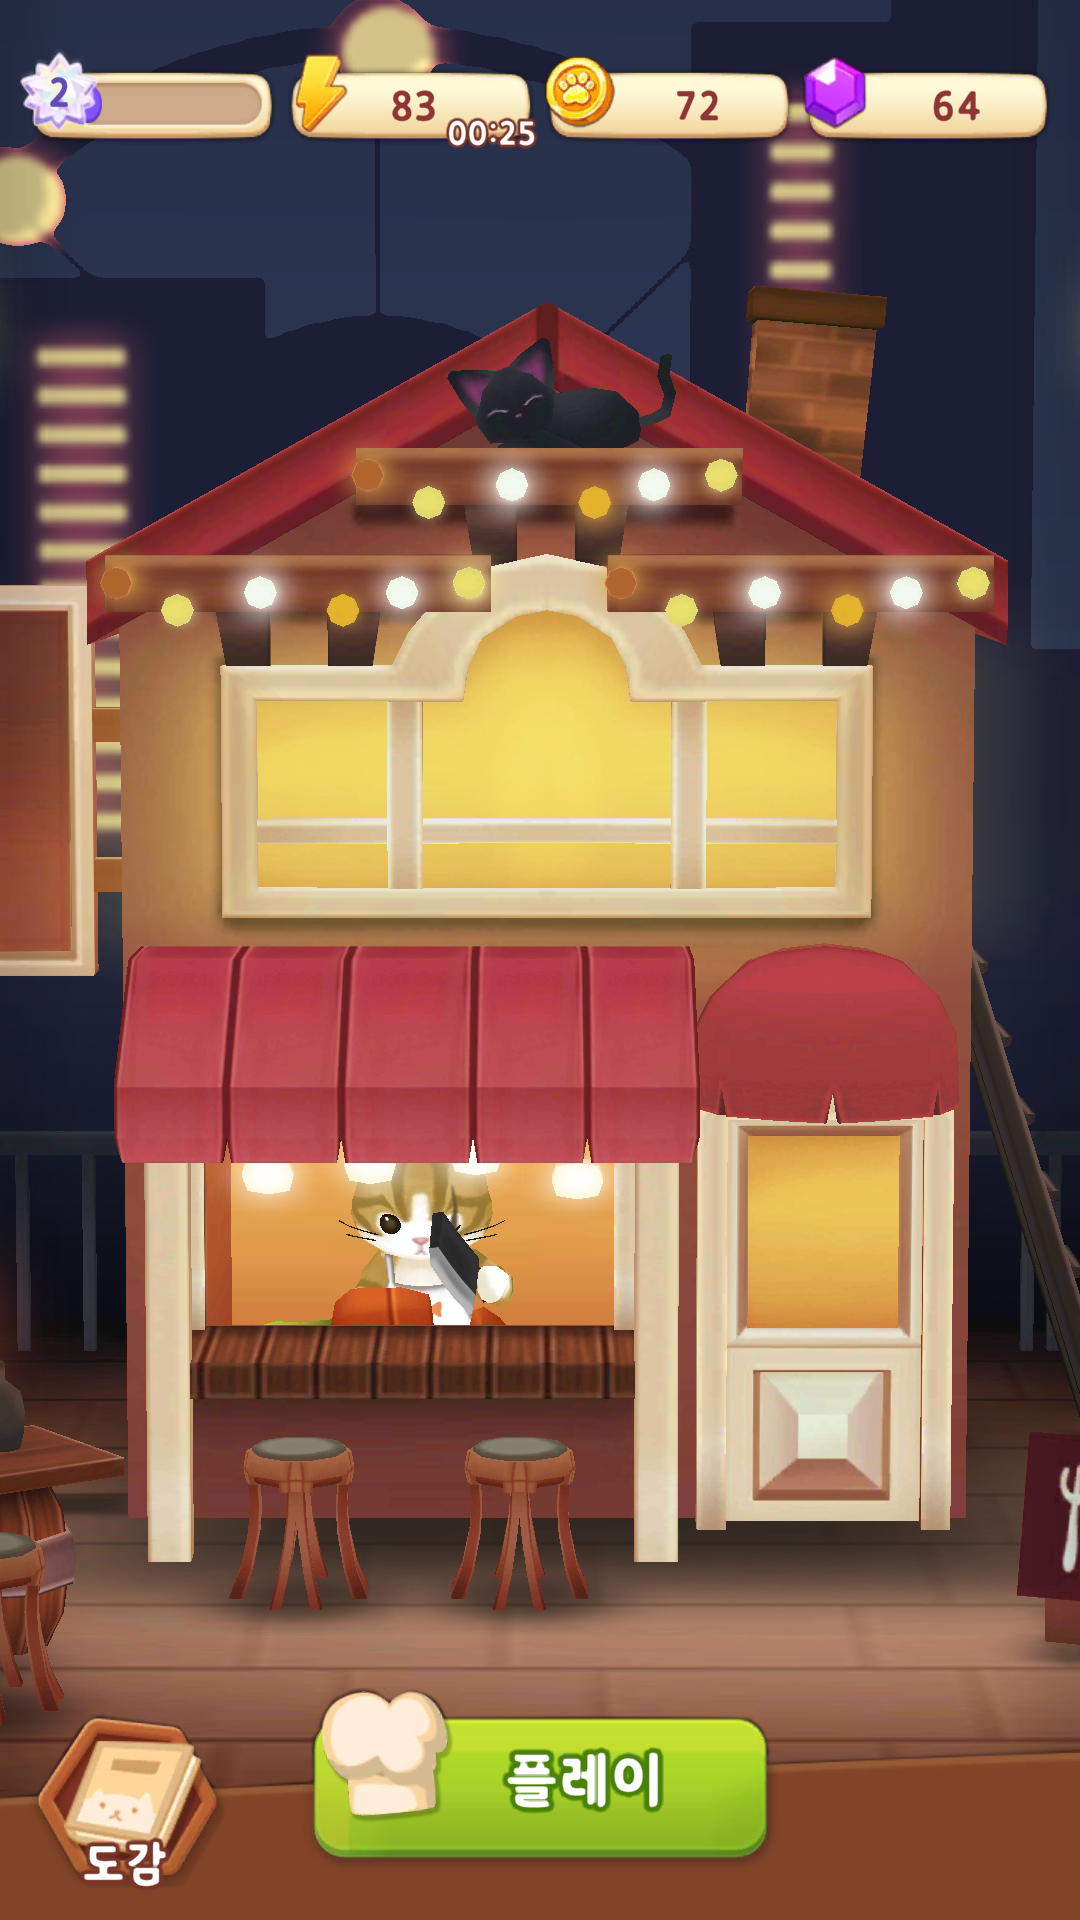 Screenshot 1 of ร้านอาหารแมว: เกมรวมแมว 1.0.20